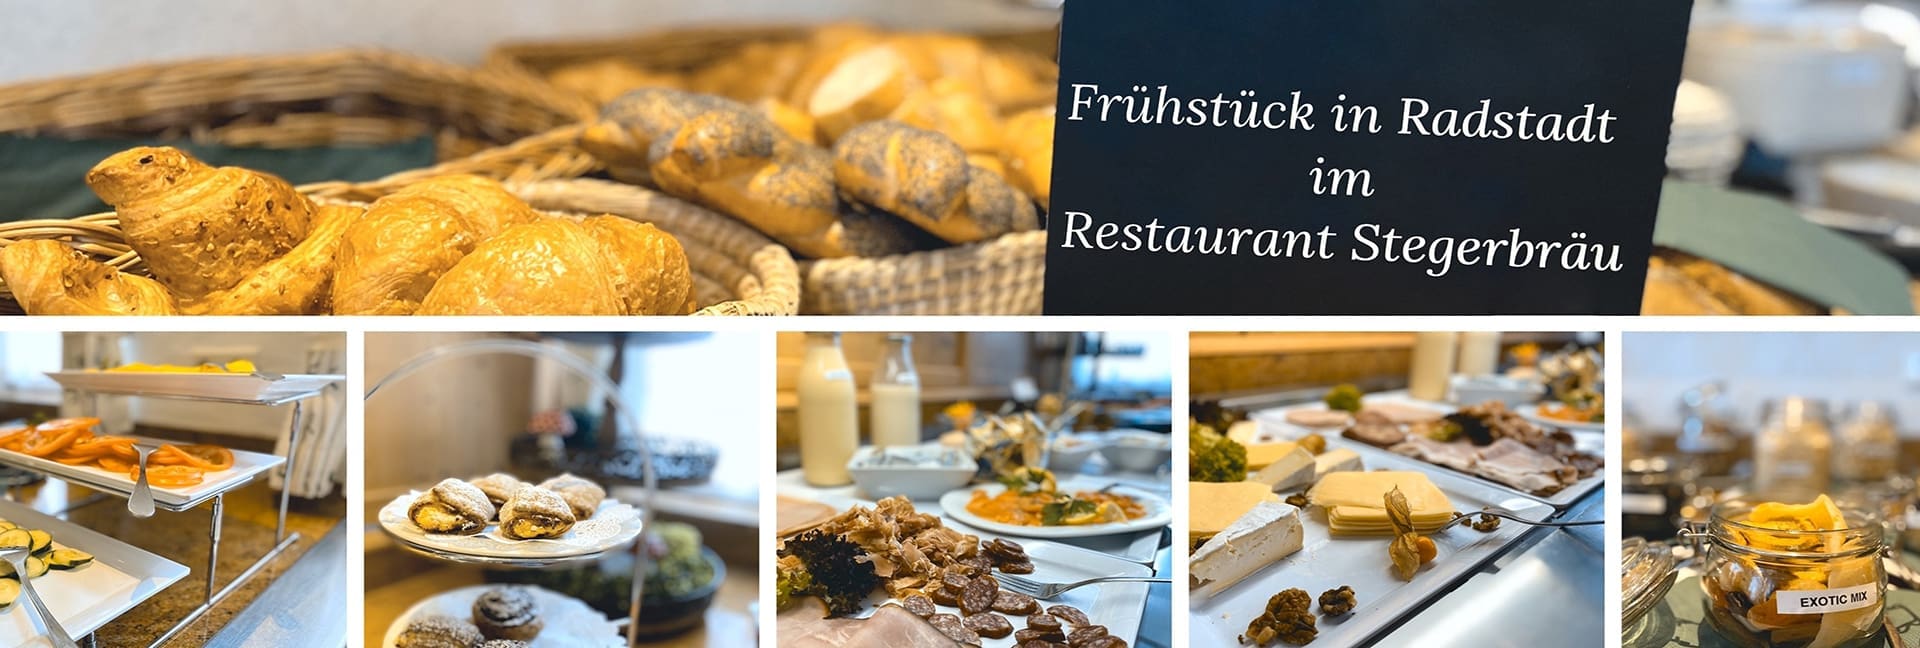 Genussvoll frühstücken in Radstadt mit der reichen Auswahl am Frühstücksbuffet im Restaurant Stegerbräu